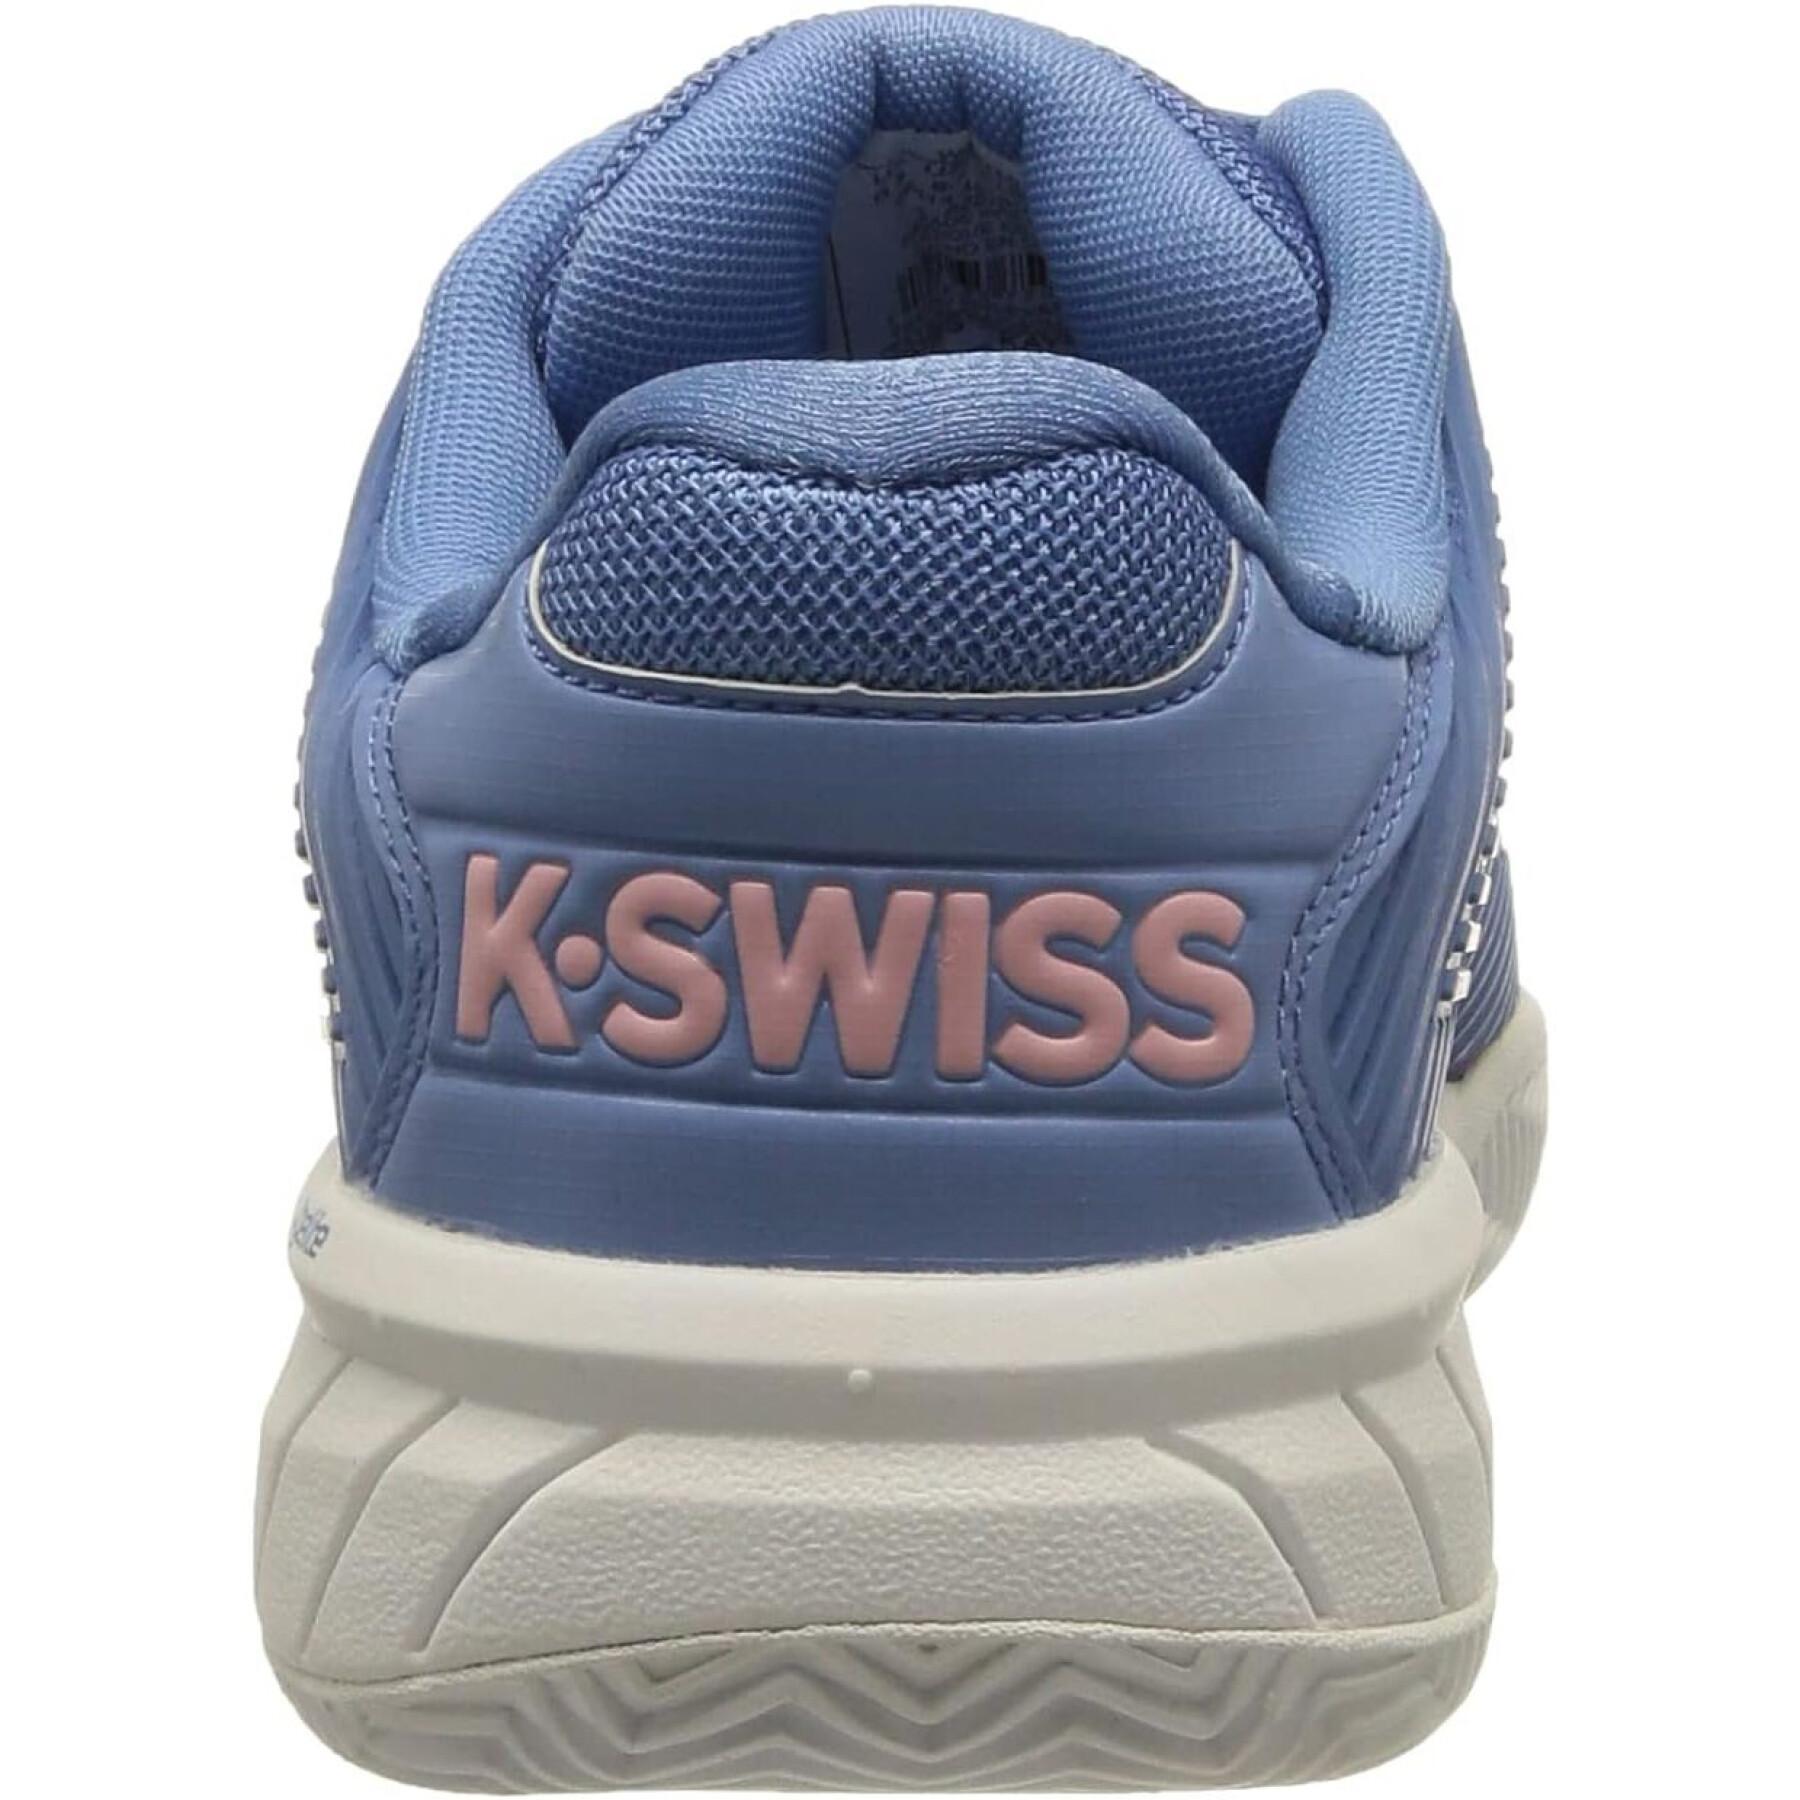 Women's sneakers K-Swiss Hypercourtexpres2hb